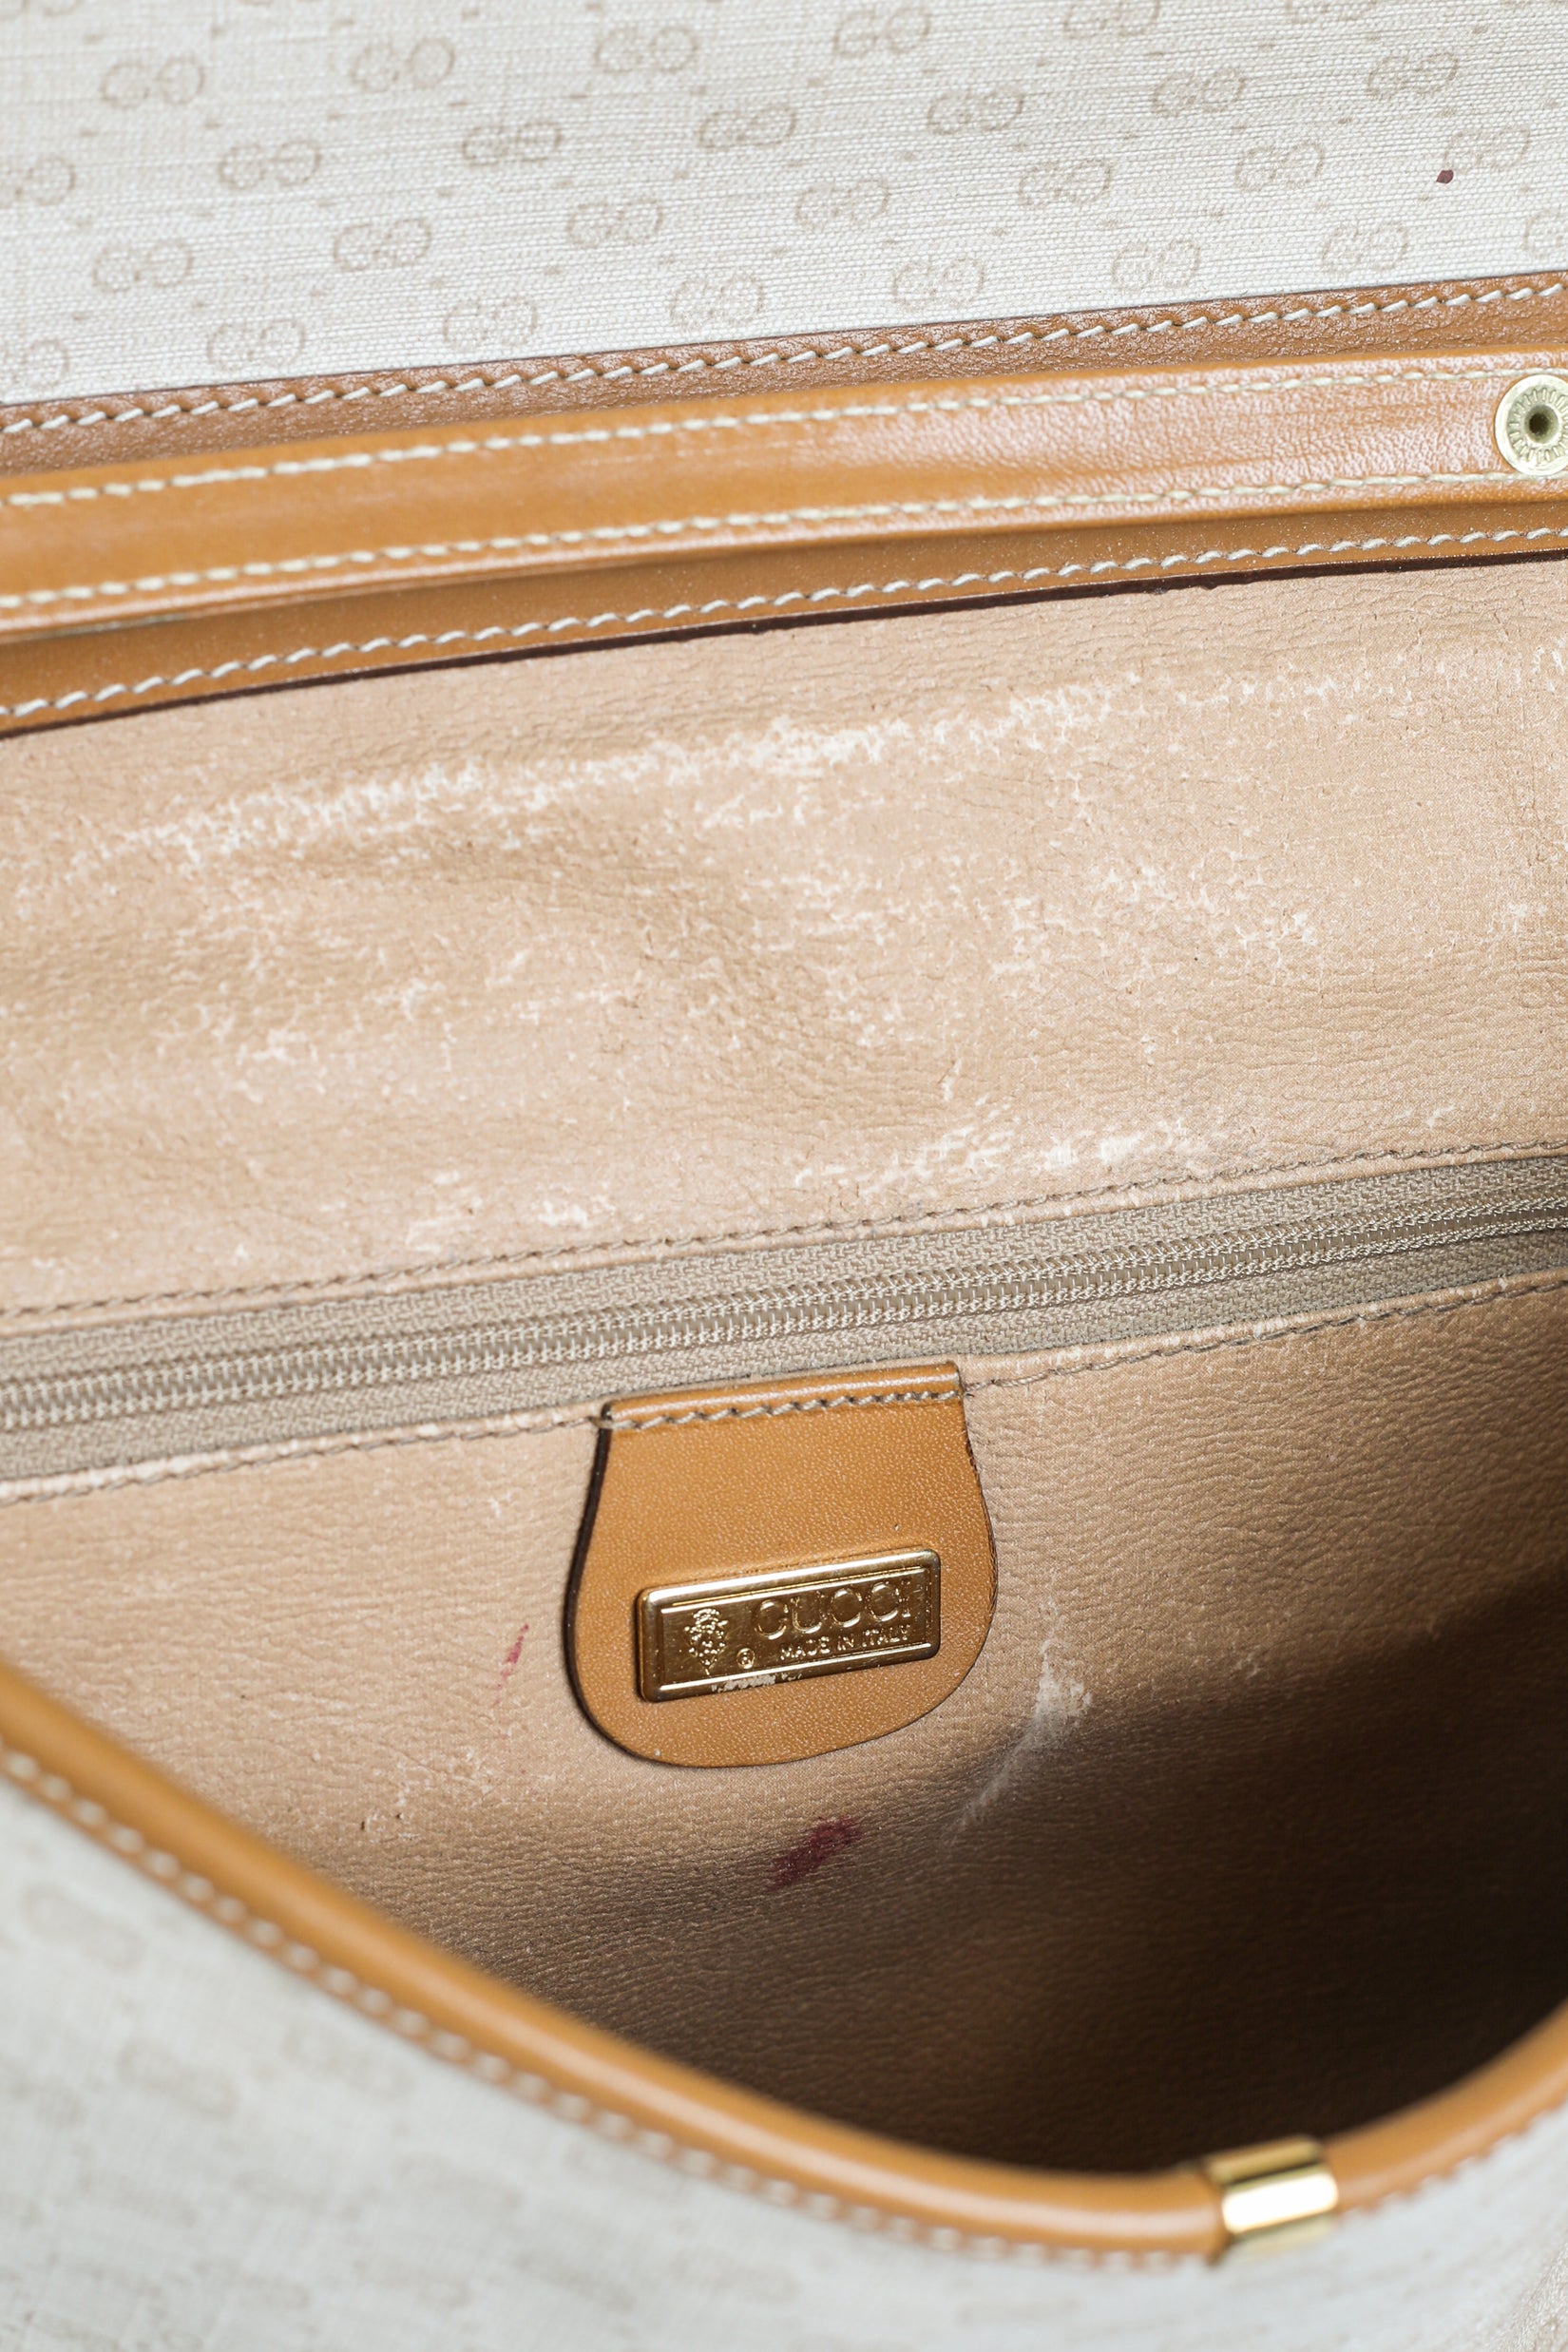 Gucci Vintage Handbag 369320